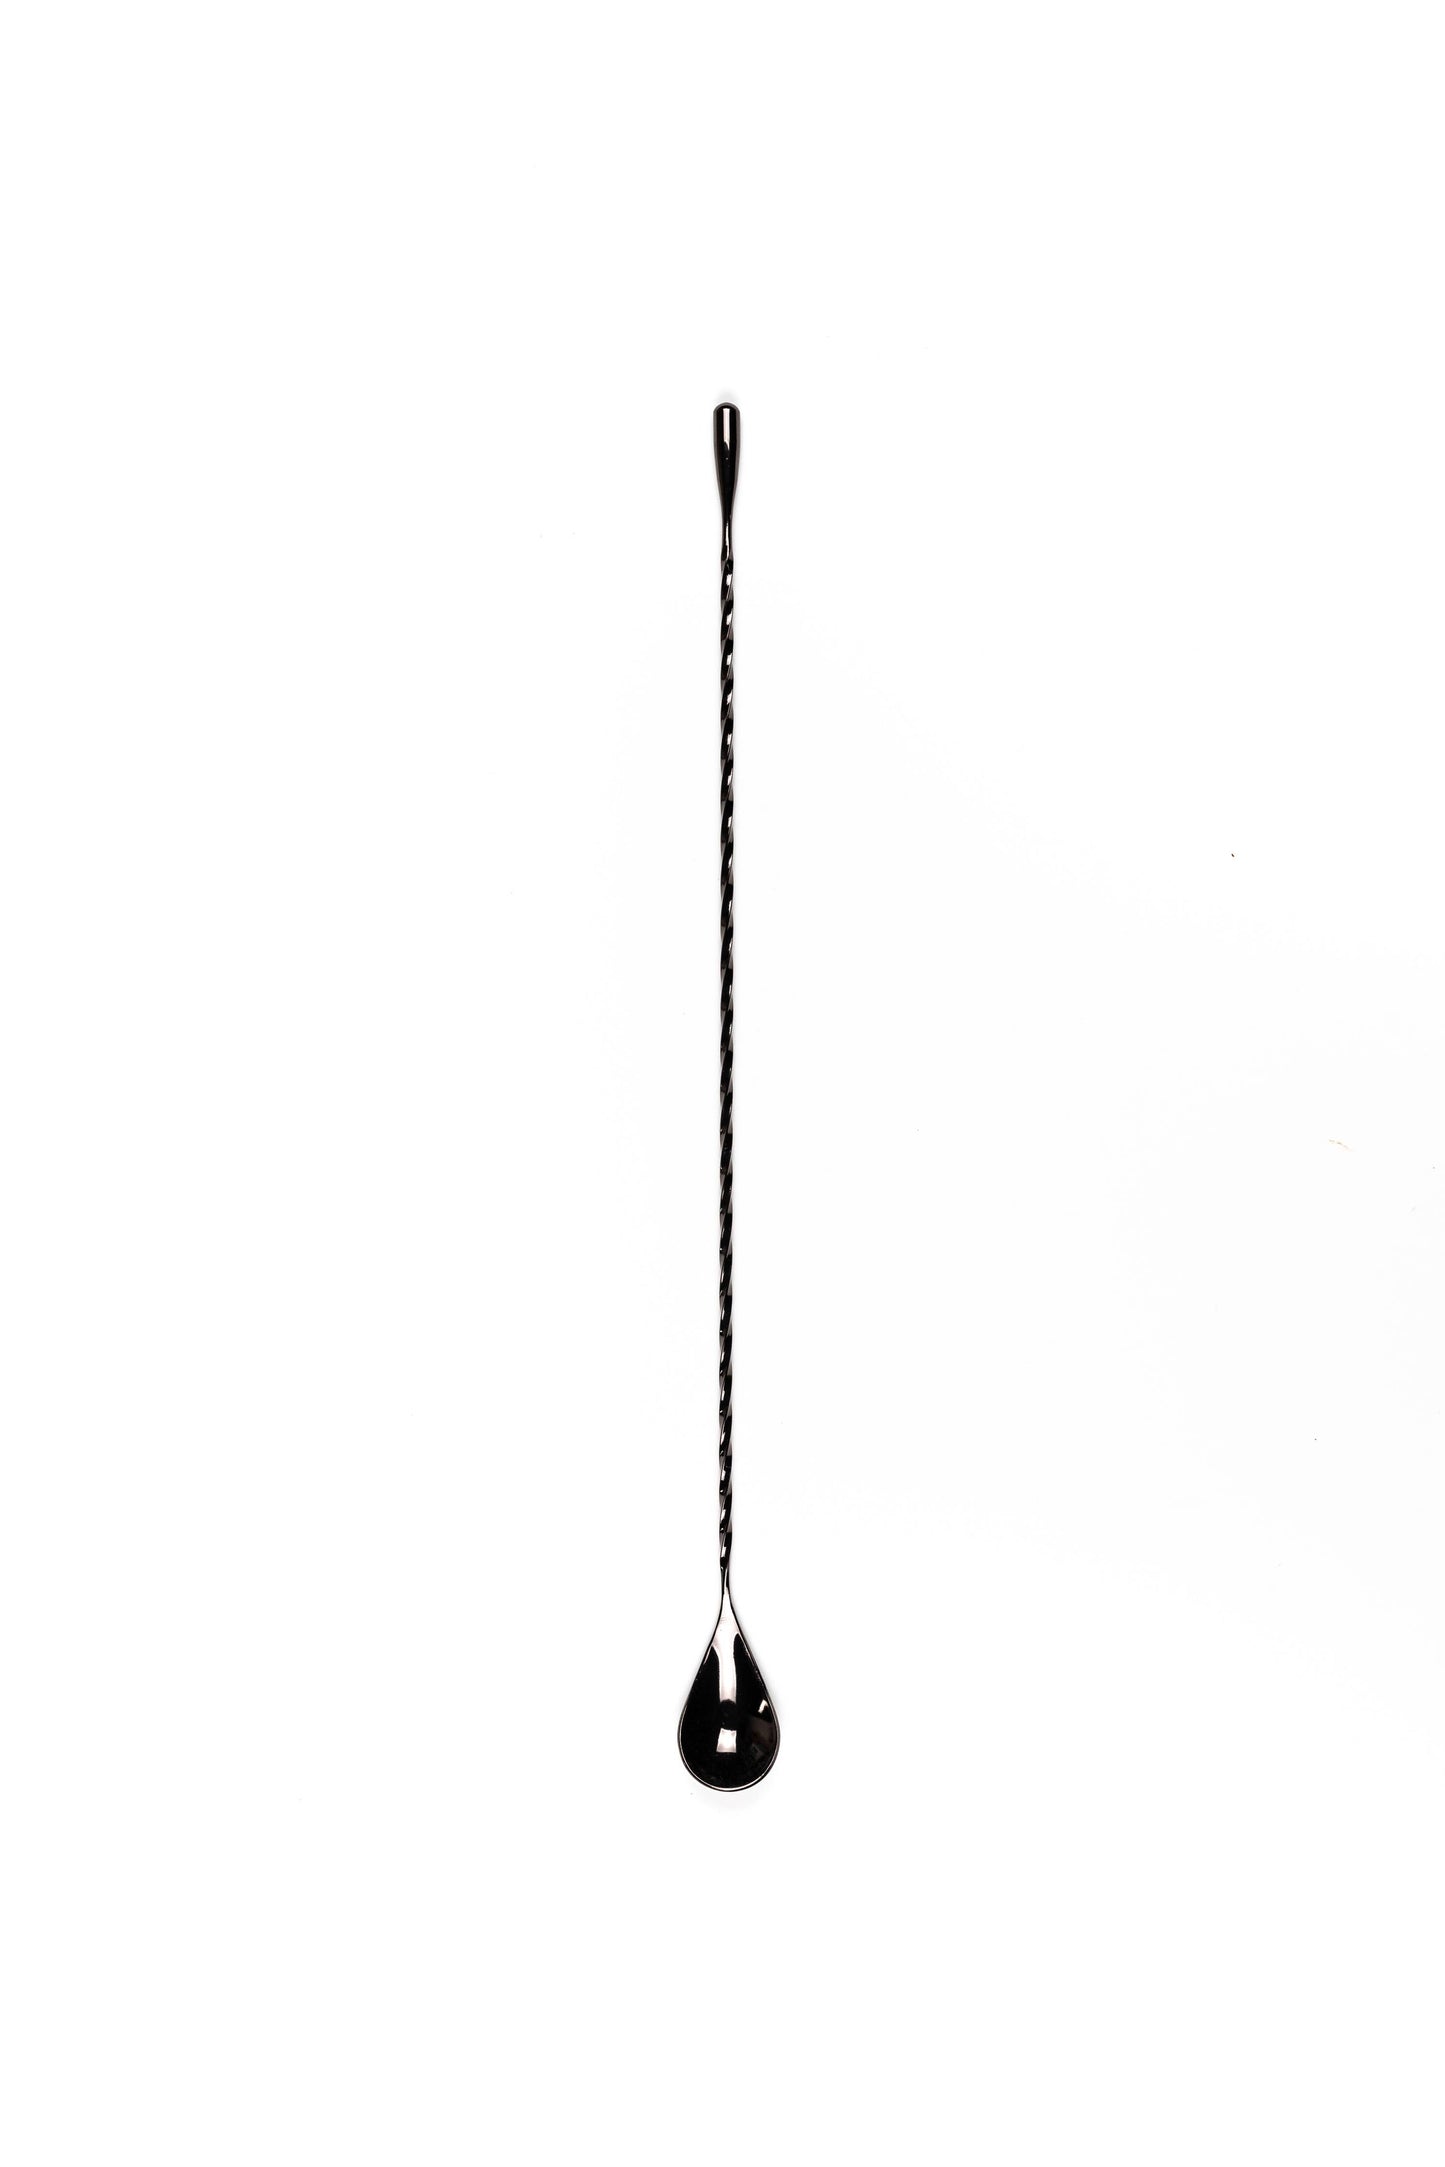 Barspoons - Lágrima en color negro plomizo (40 cm/16 pulgadas de largo)